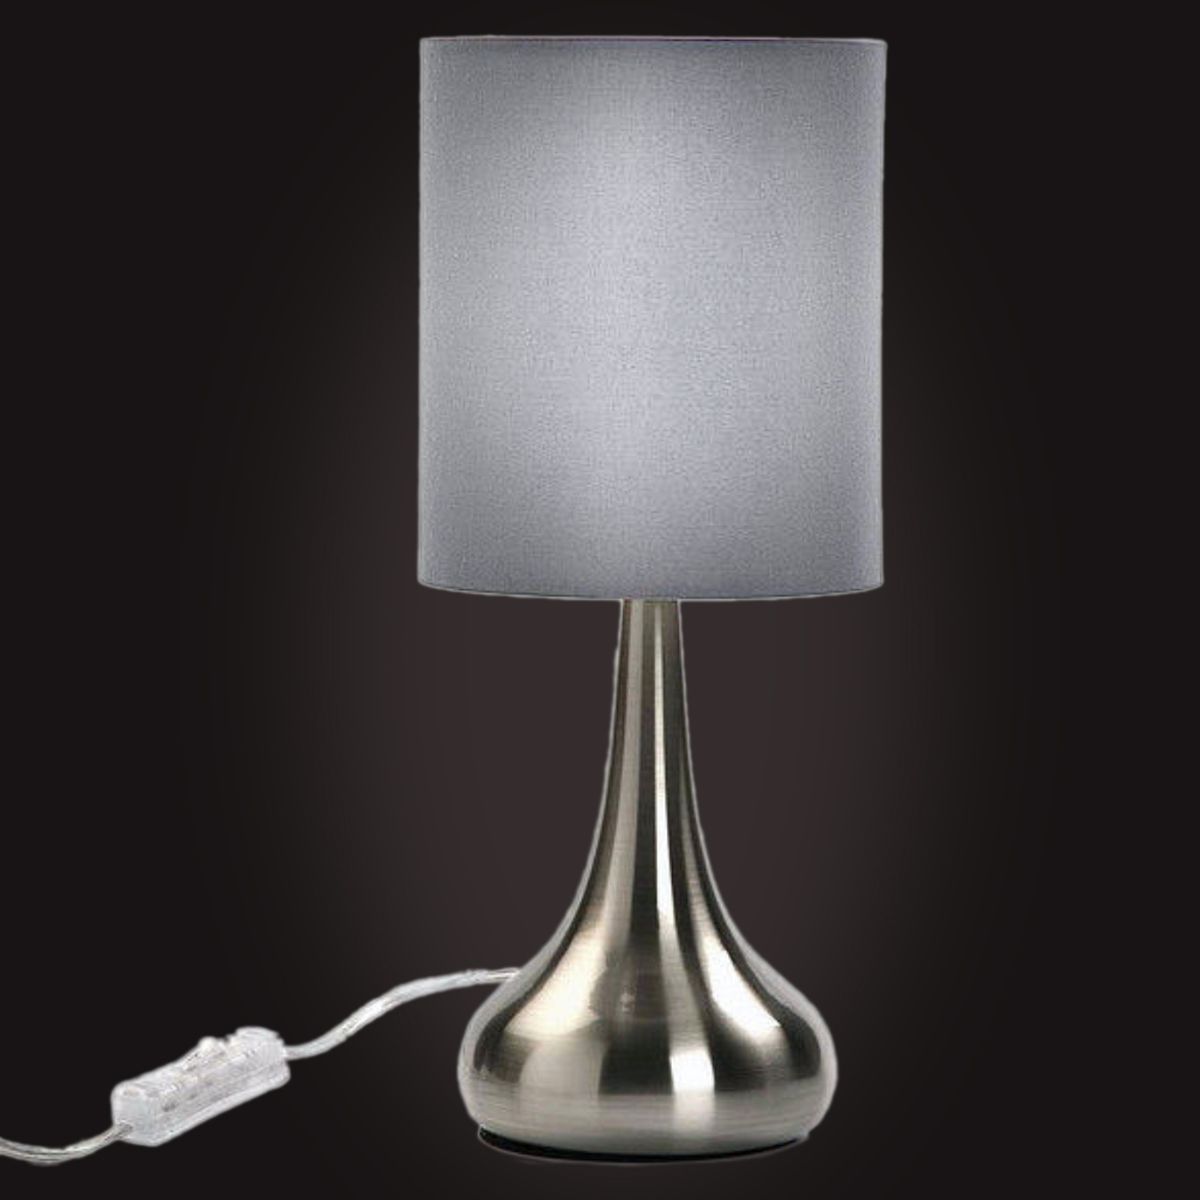 Gray metal table lamp